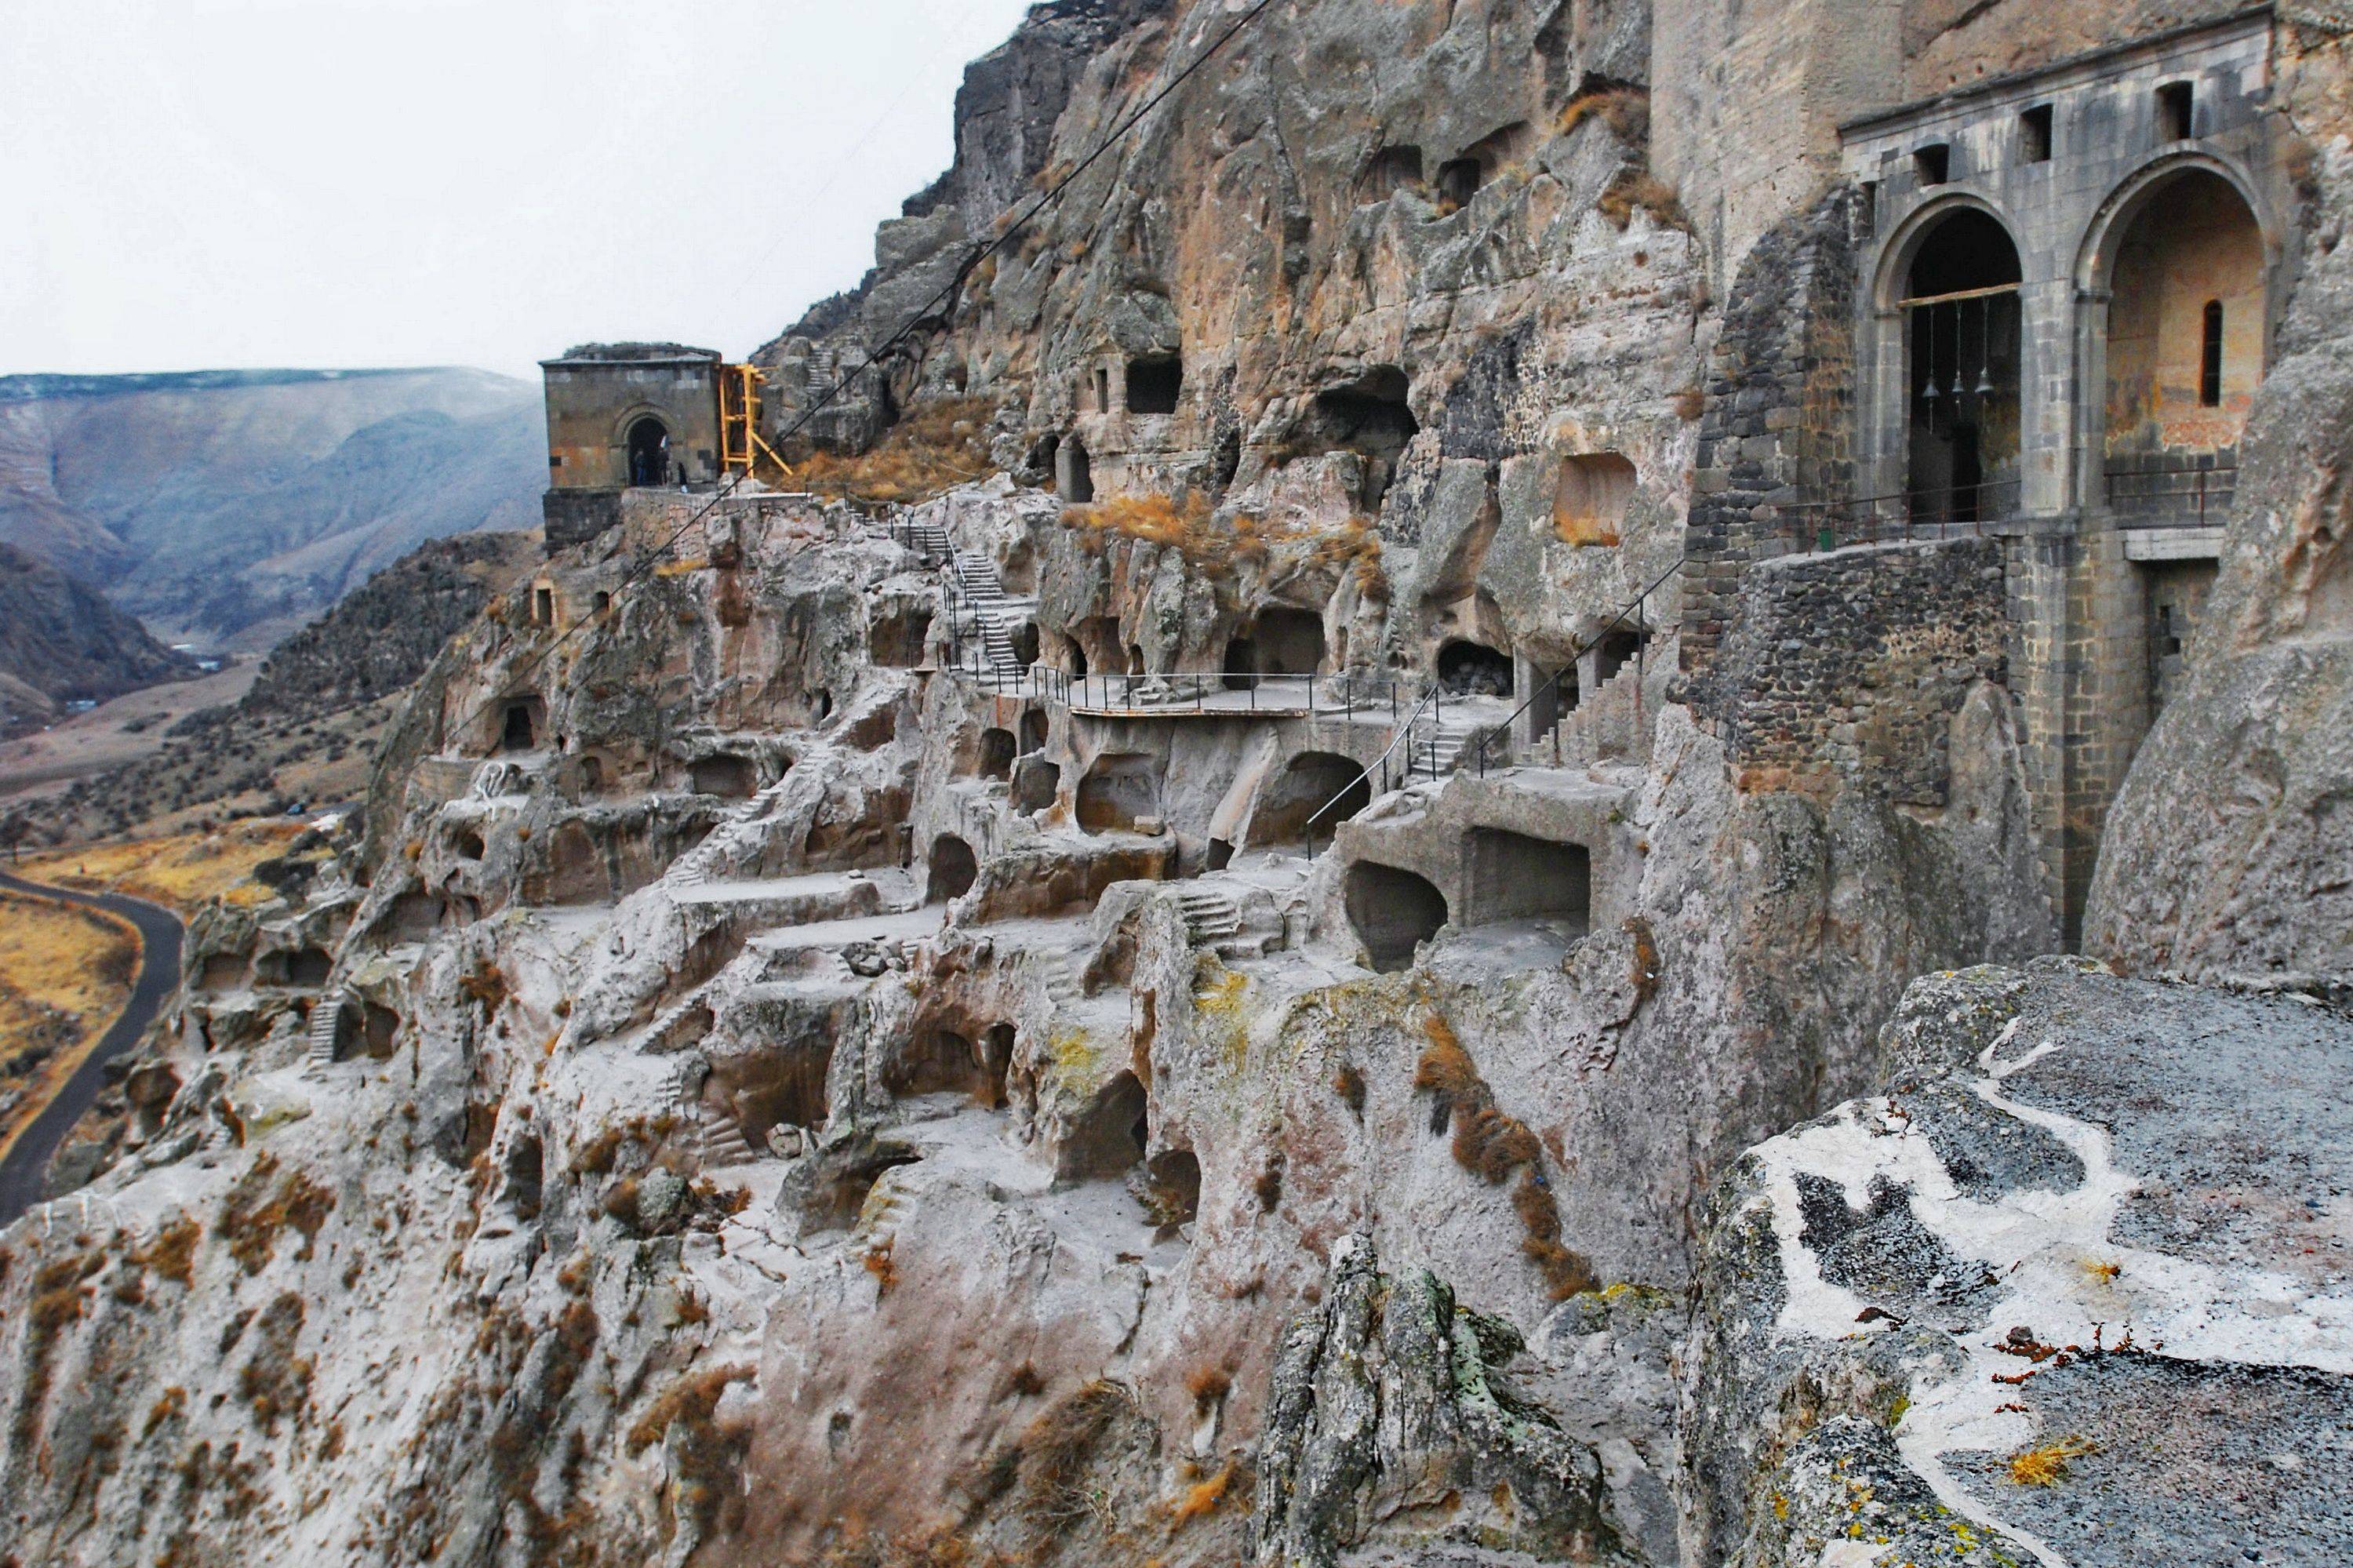 La città rupestre di Vardzia e il rientro in Armenia